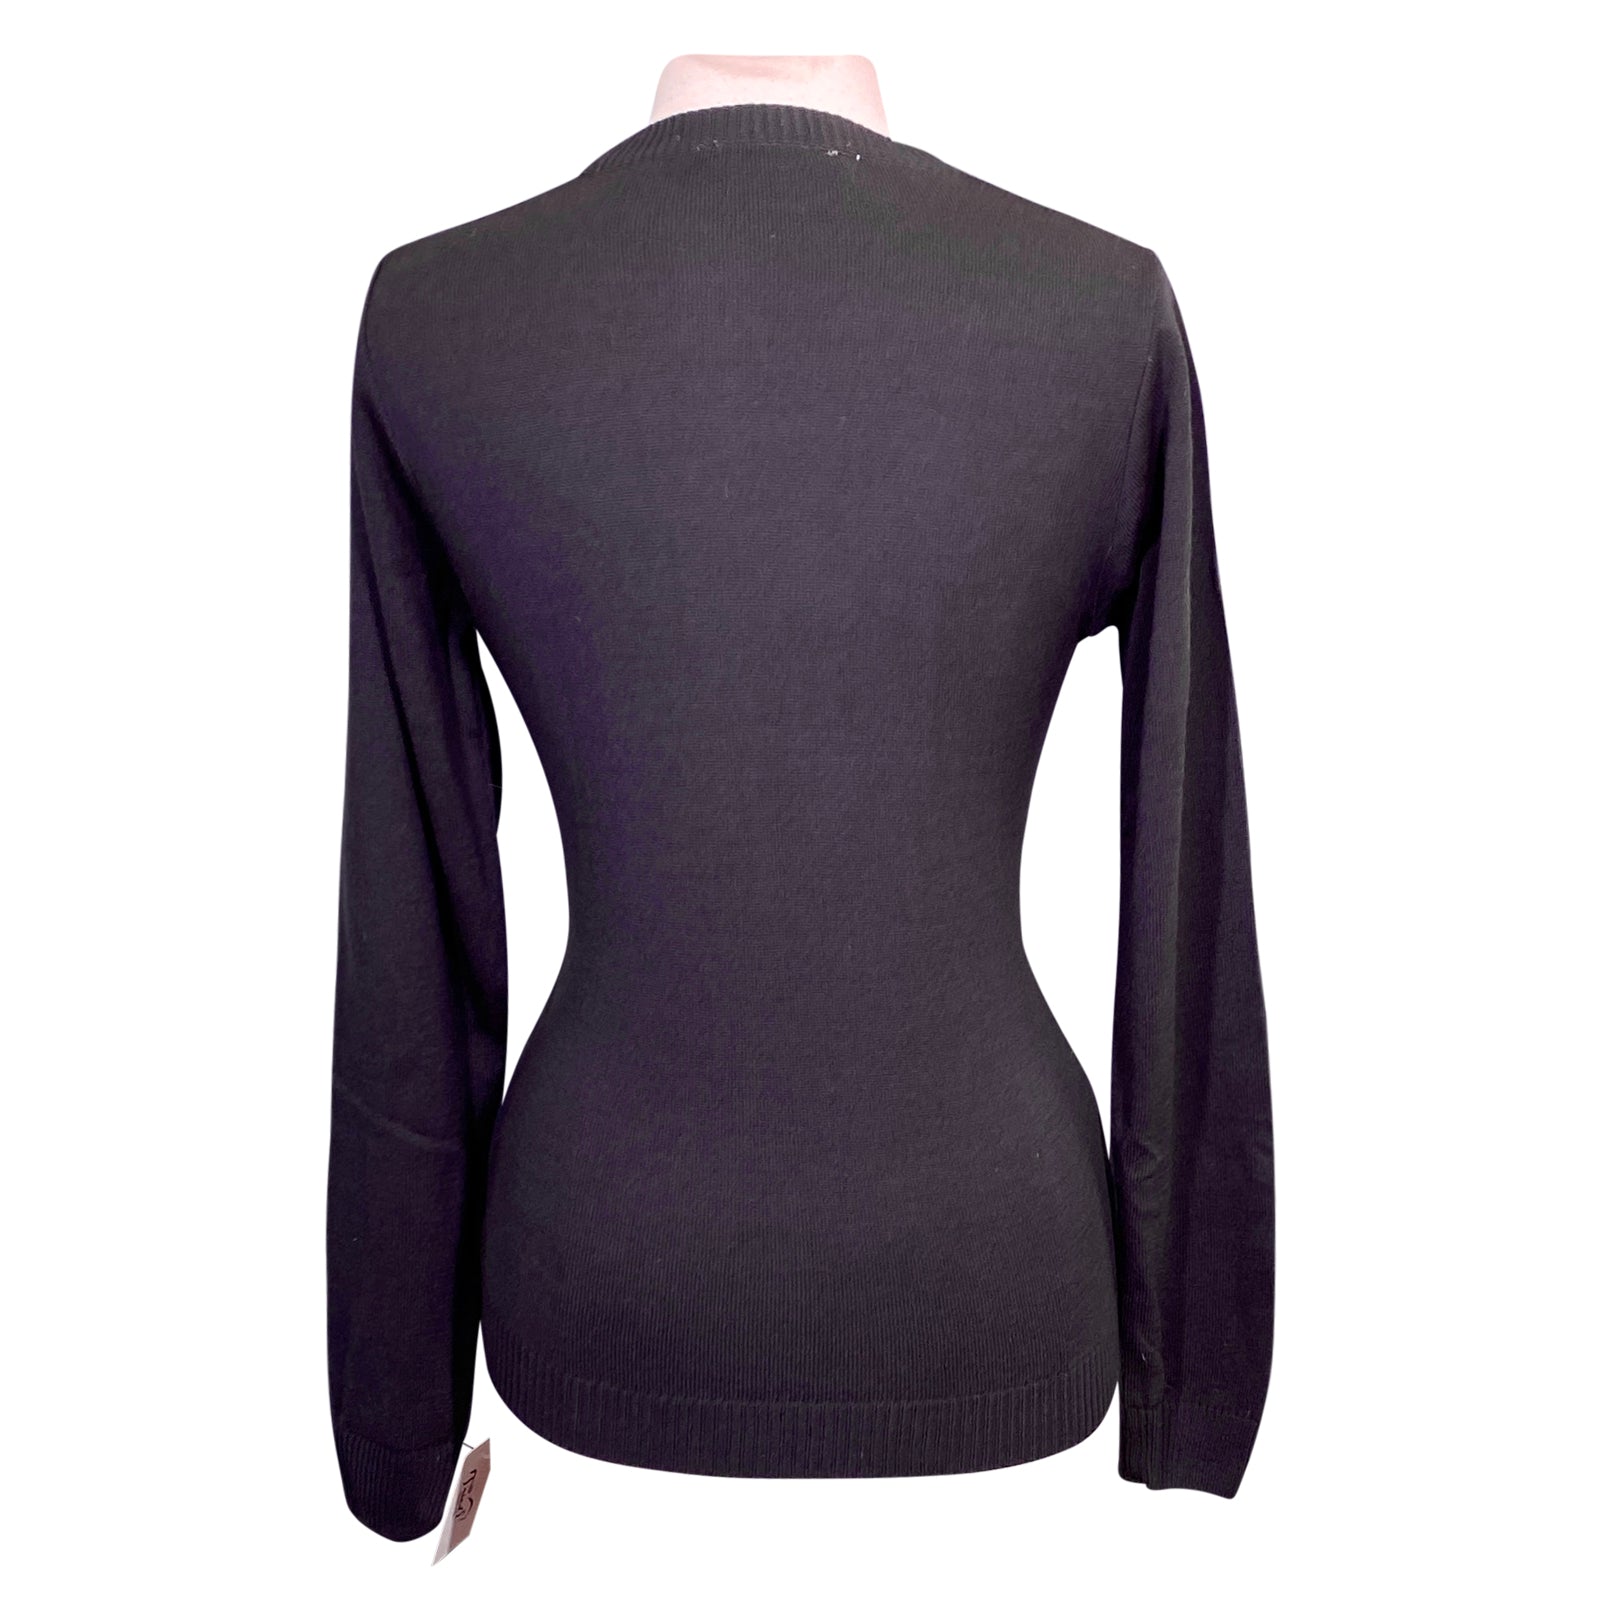 SmartPak Piper Crewneck Sweater in Grape - Women's XS